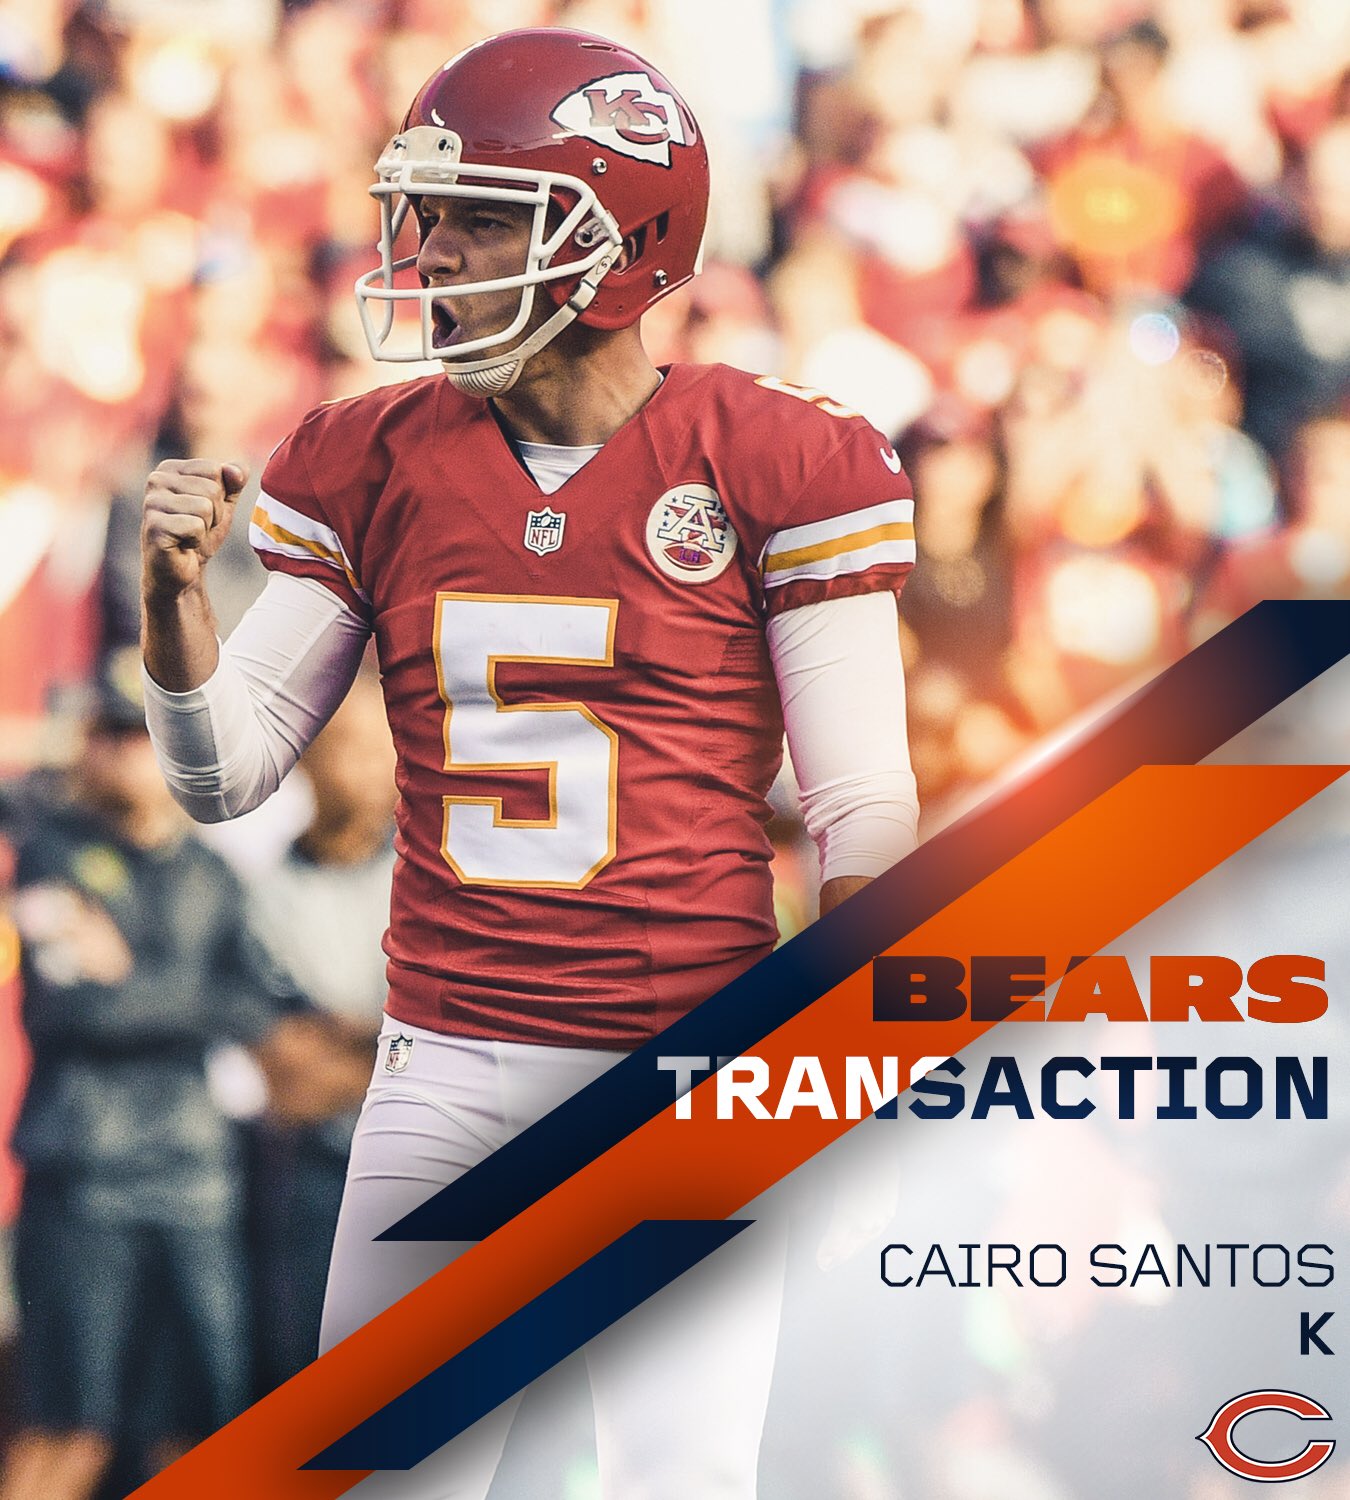 Cairo Santos fecha contrato com Chicago Bears e está de volta à NFL